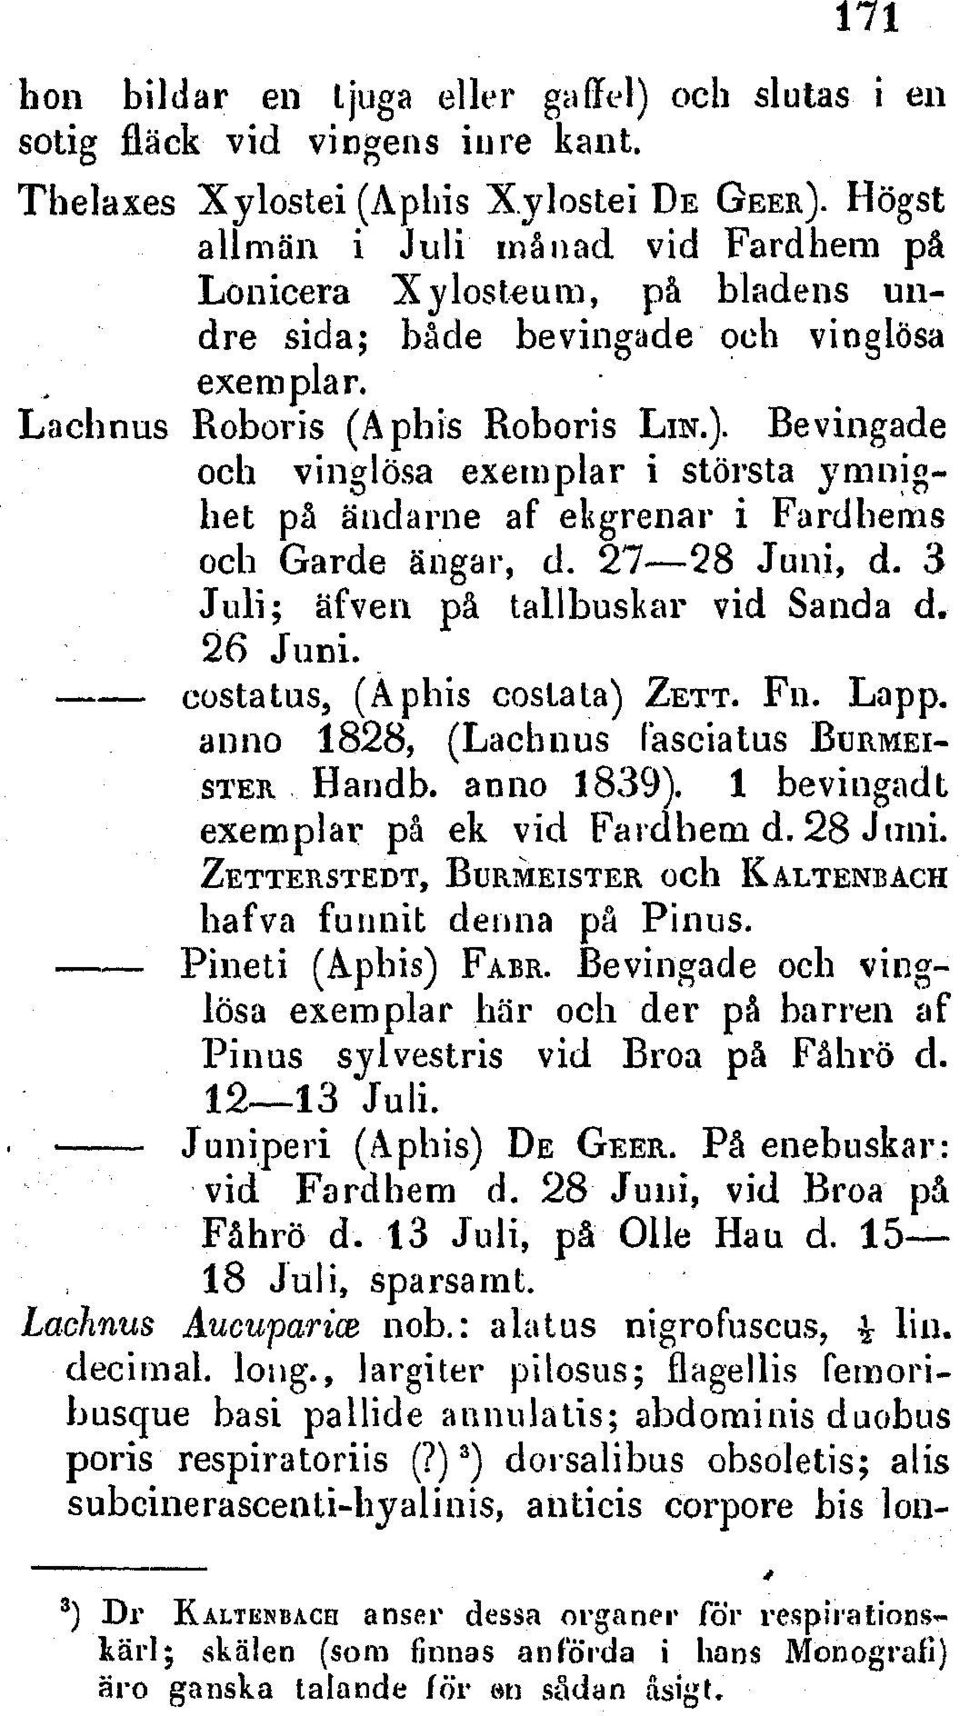 Bevingade och vinaglsa exemplar i storsta yrmnibet p iindclarne af ekgrenar i Fardherns och Garde dntgar, d. 27-28 Juni, d. 3 Juli; ffvern pa tallbuskar vid Sanda d. 26 Juni.